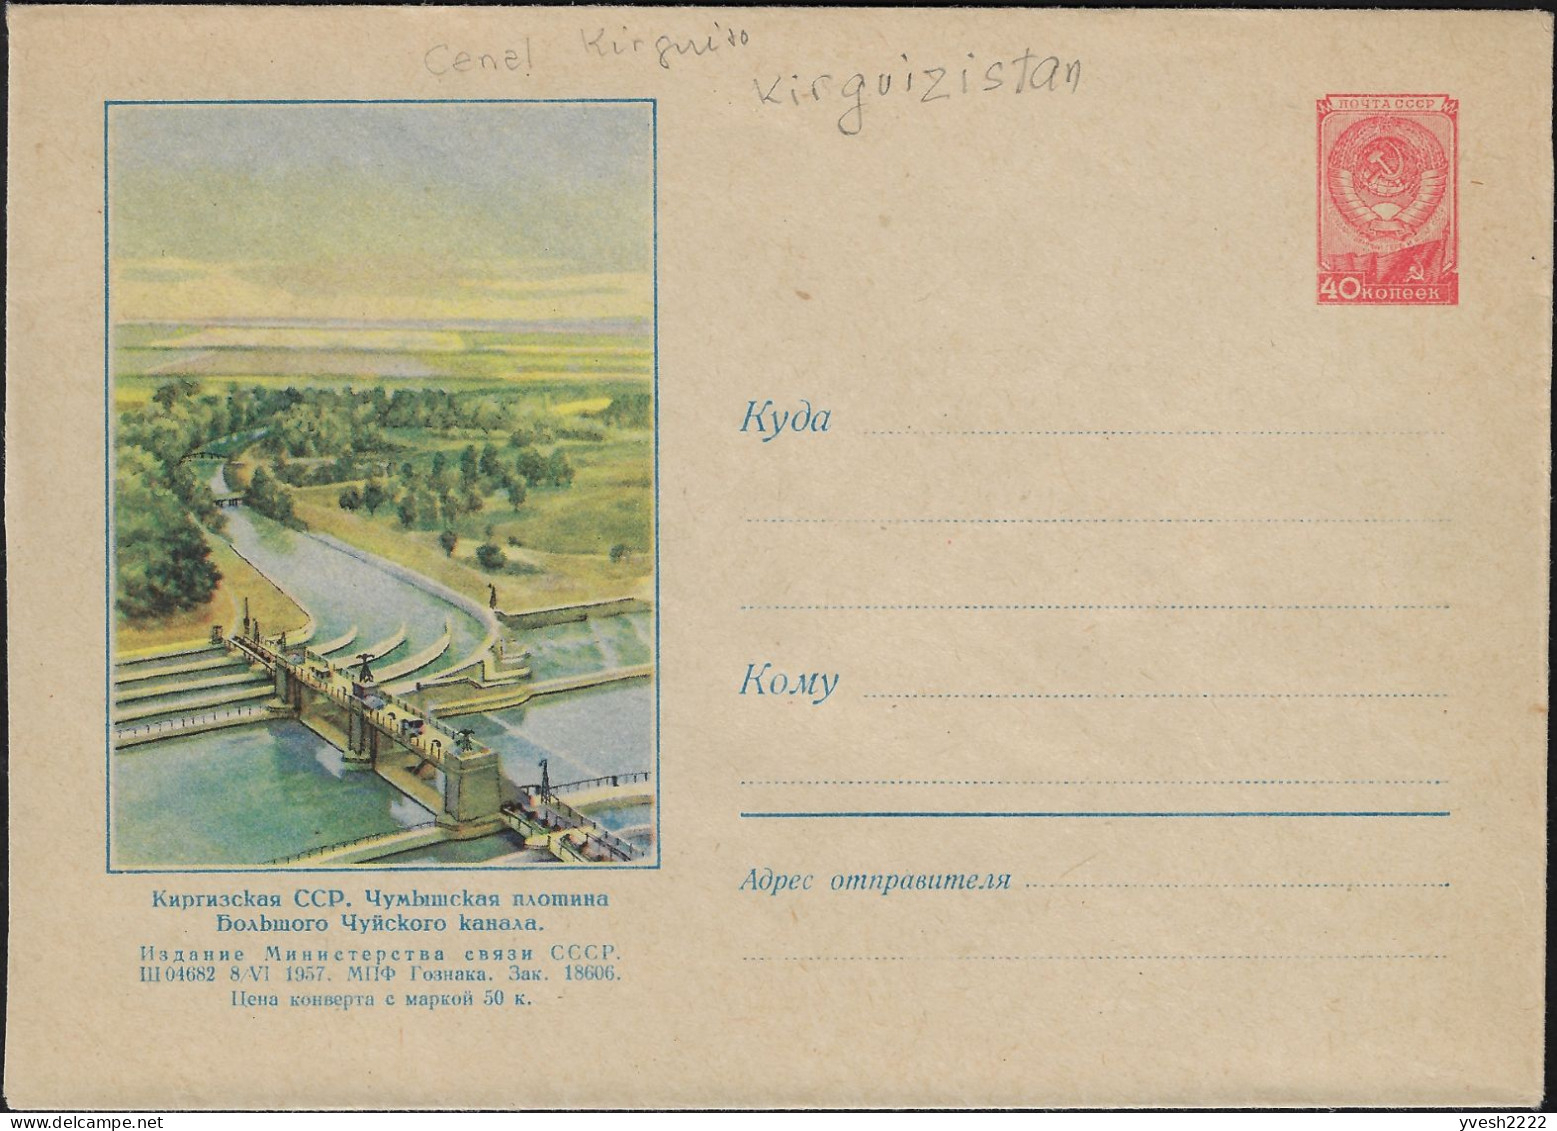 Kirghizstan, Occupation Soviétique. Entier Postal Illustré, Grand Canal De Chüy Et Son Barrage Chumysh - Agua